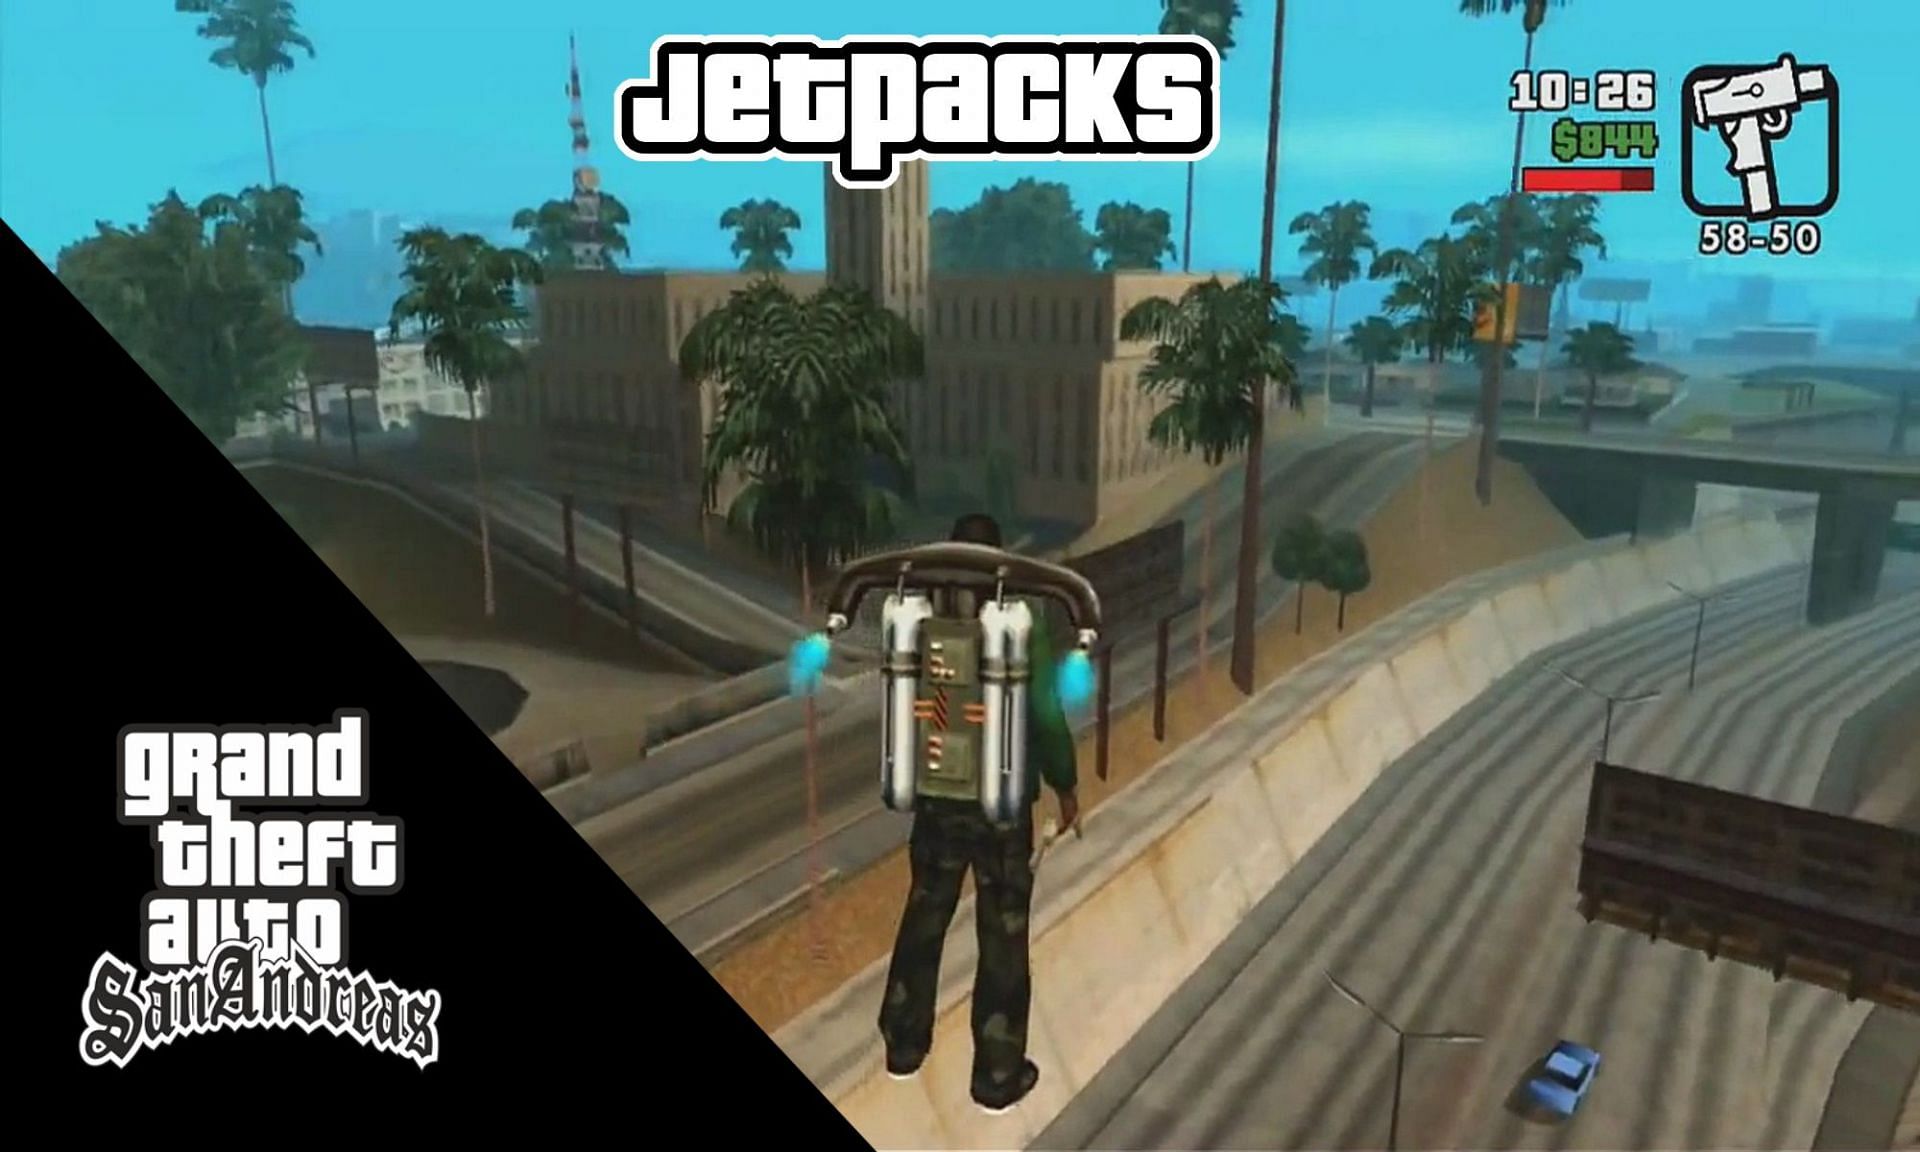 Download jetpack v2 for GTA 3